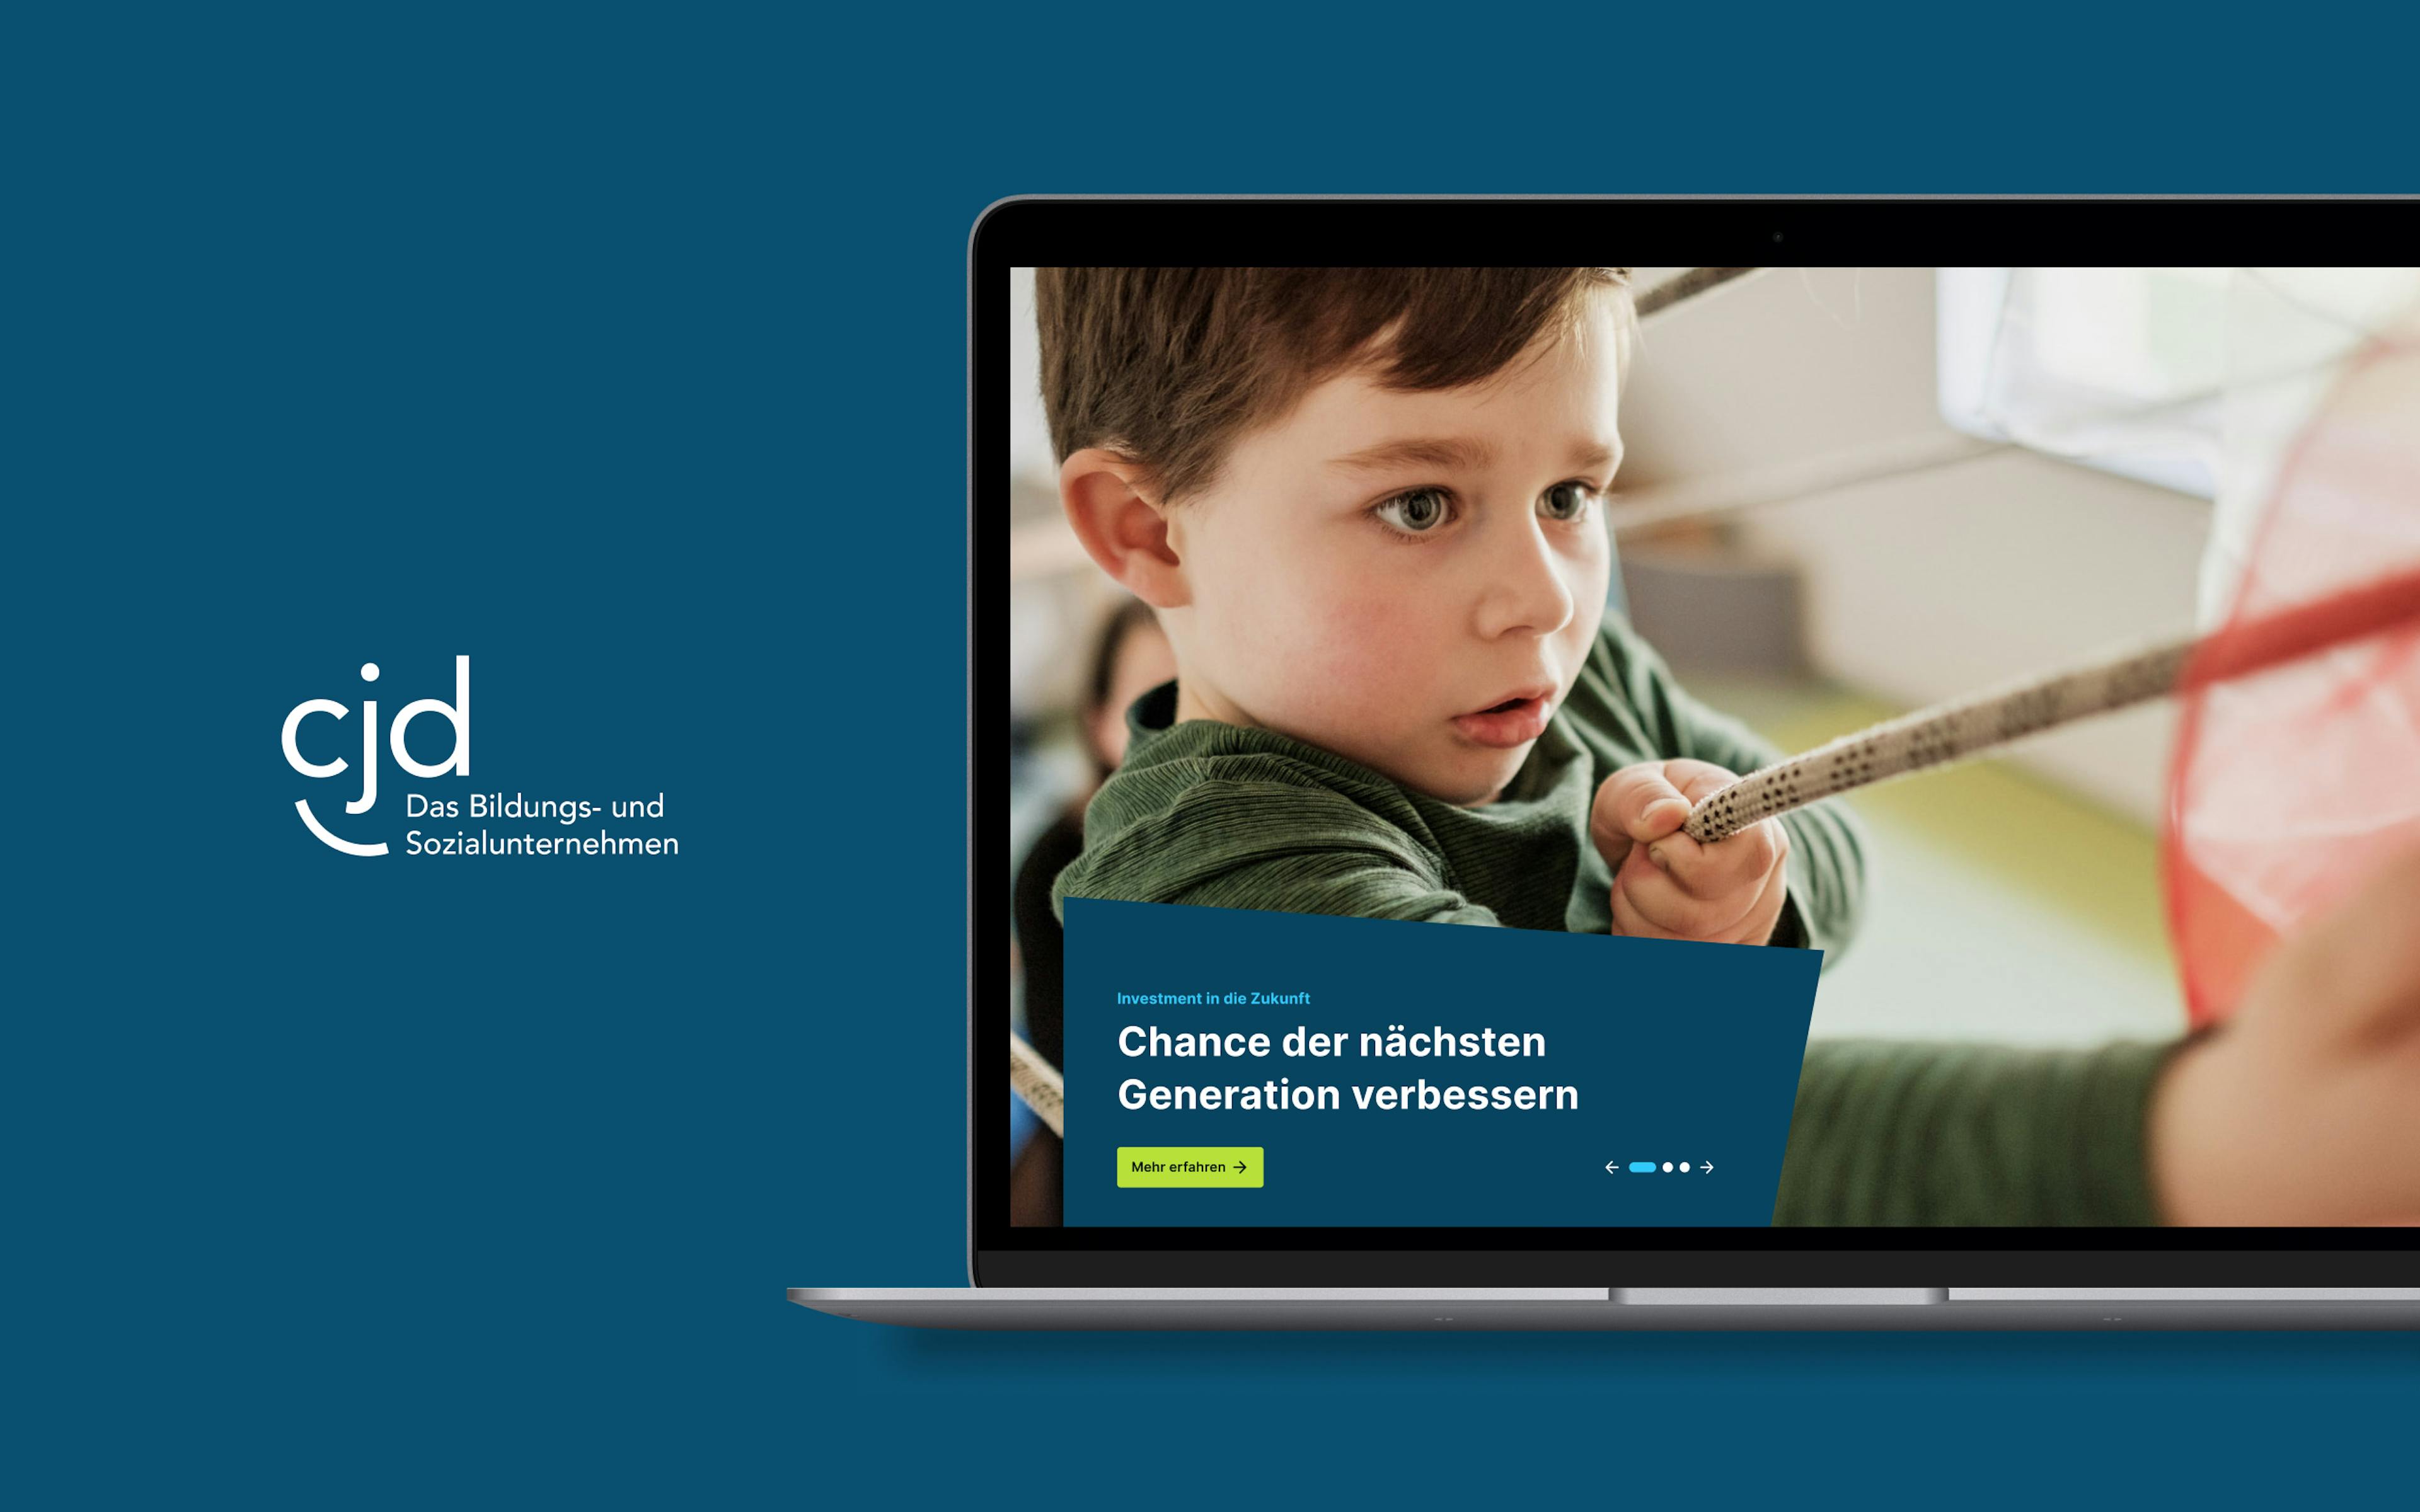 Neben dem CJD-Logo befindet sich ein Laptop-Mockup mit Screendesign, auf dem ein kleiner Junge beim Spielen zu sehen ist. 